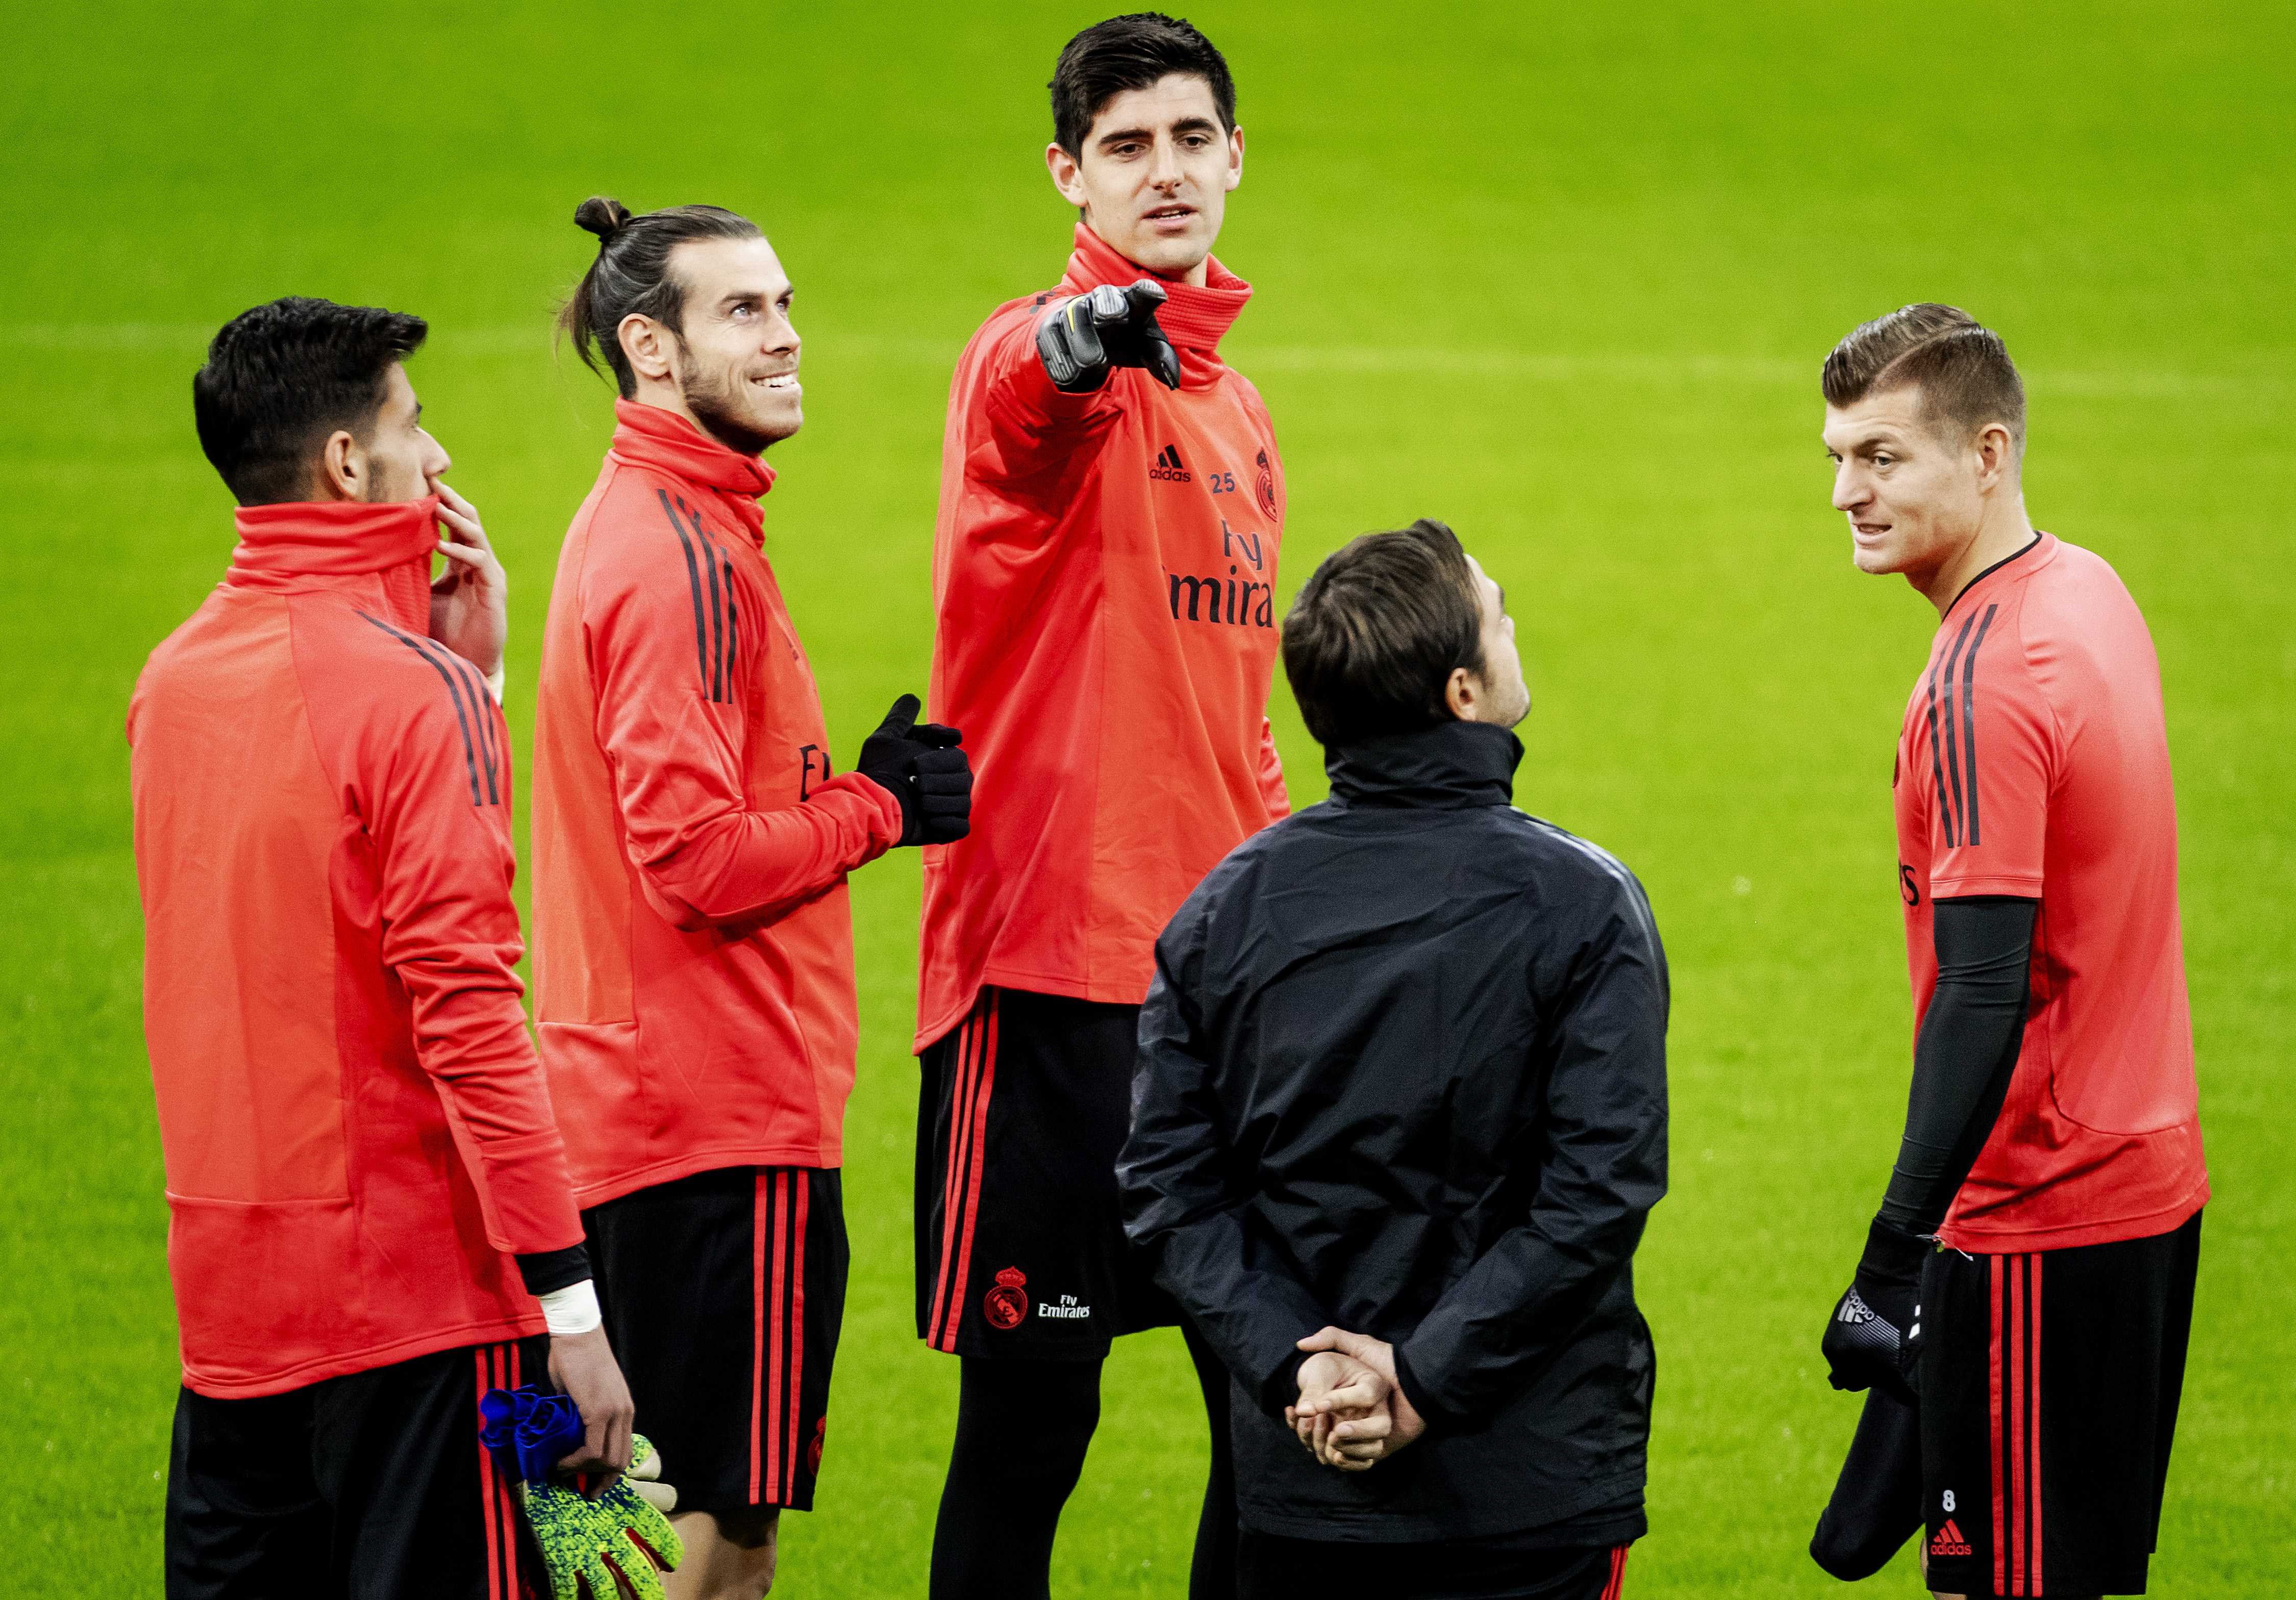 Los jugadores del Real Madrid (izq a dcha) Diego Altube, Gareth Bale, Thibaut Courtois, y Toni Kroos participan en una sesión de entrenamiento en el estadio Amsterdam Arena de Amsterdam. (Foto Prensa Libre: EFE)